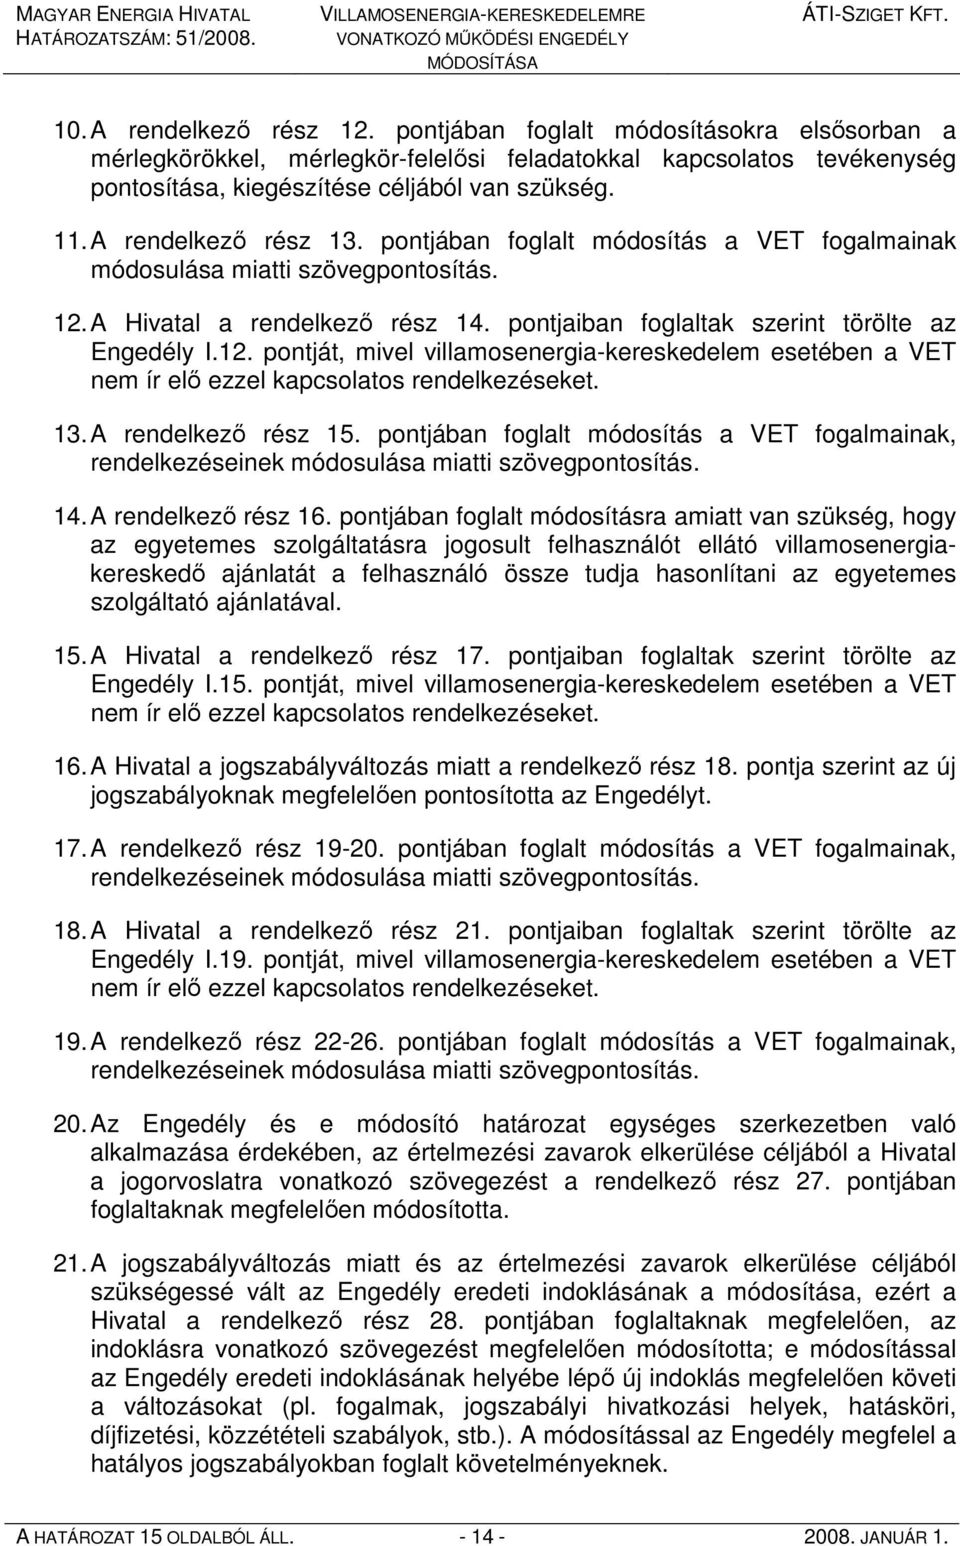 A Hivatal a rendelkezı rész 14. pontjaiban foglaltak szerint törölte az Engedély I.12. pontját, mivel villamosenergia-kereskedelem esetében a VET nem ír elı ezzel kapcsolatos rendelkezéseket. 13.